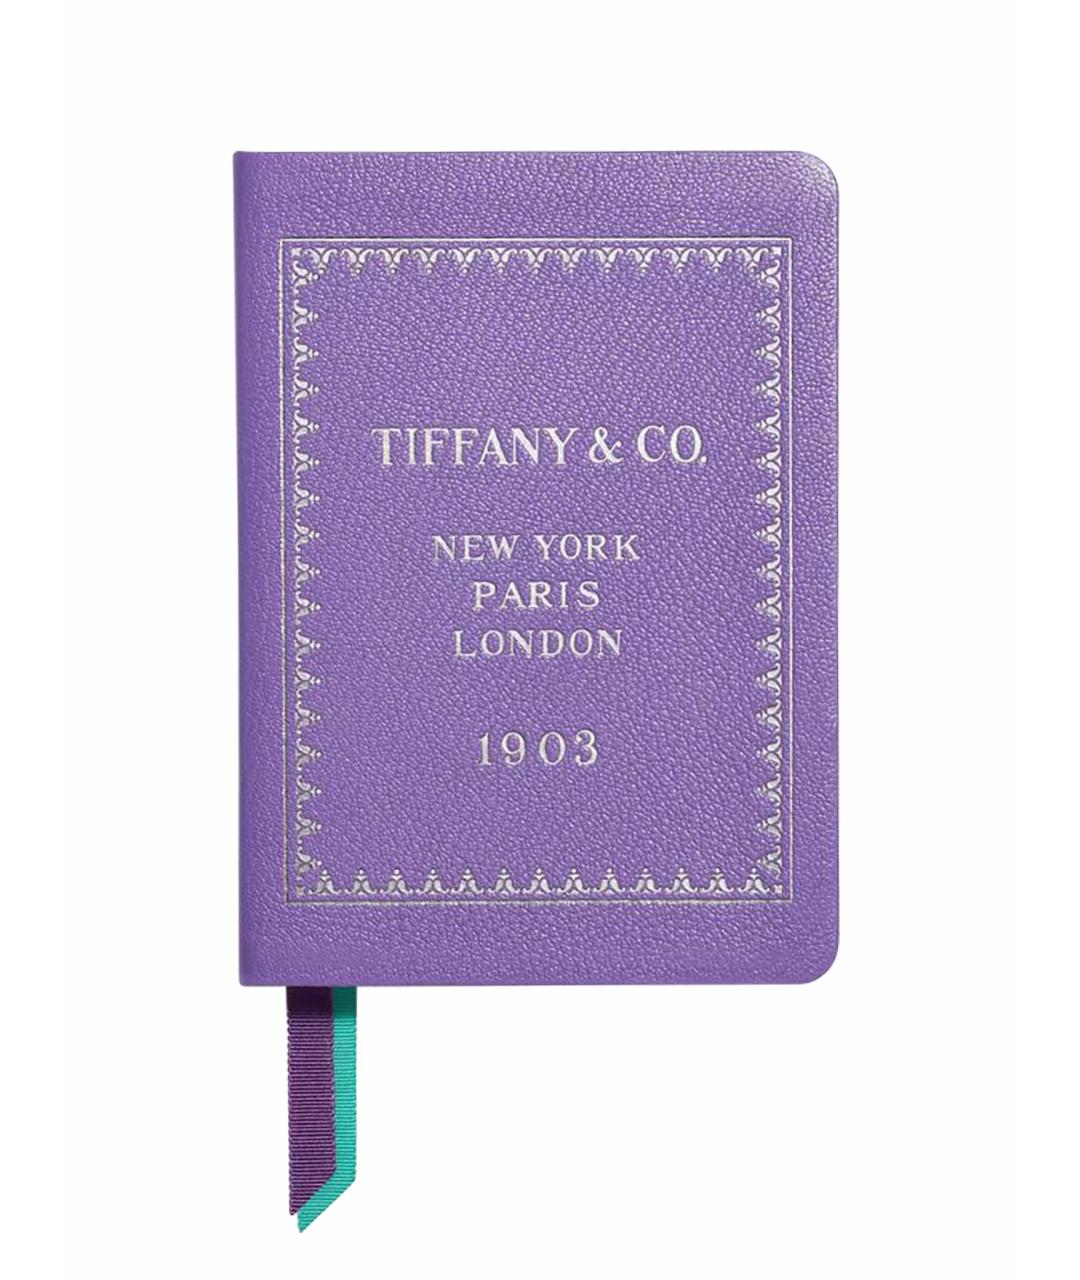 TIFFANY&CO Книга, фото 1